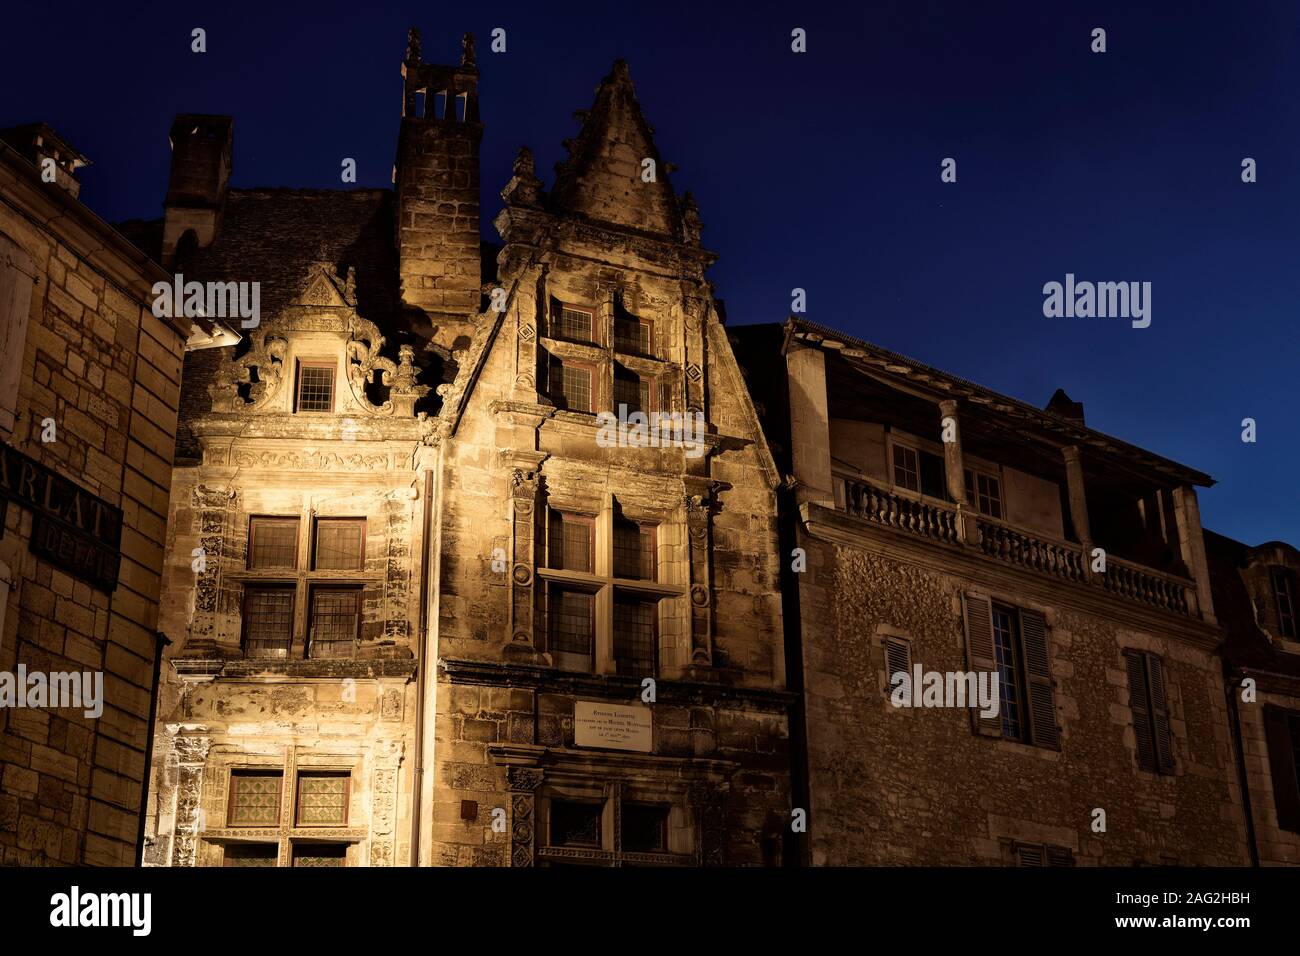 Maison de la Boétie, bâtiment historique de la ville de Sarlat dans le sud de la France. Paysage nocturne, Estienne de LaBoétie Maison, Sarlat-la-Canéda, Dordogn Banque D'Images